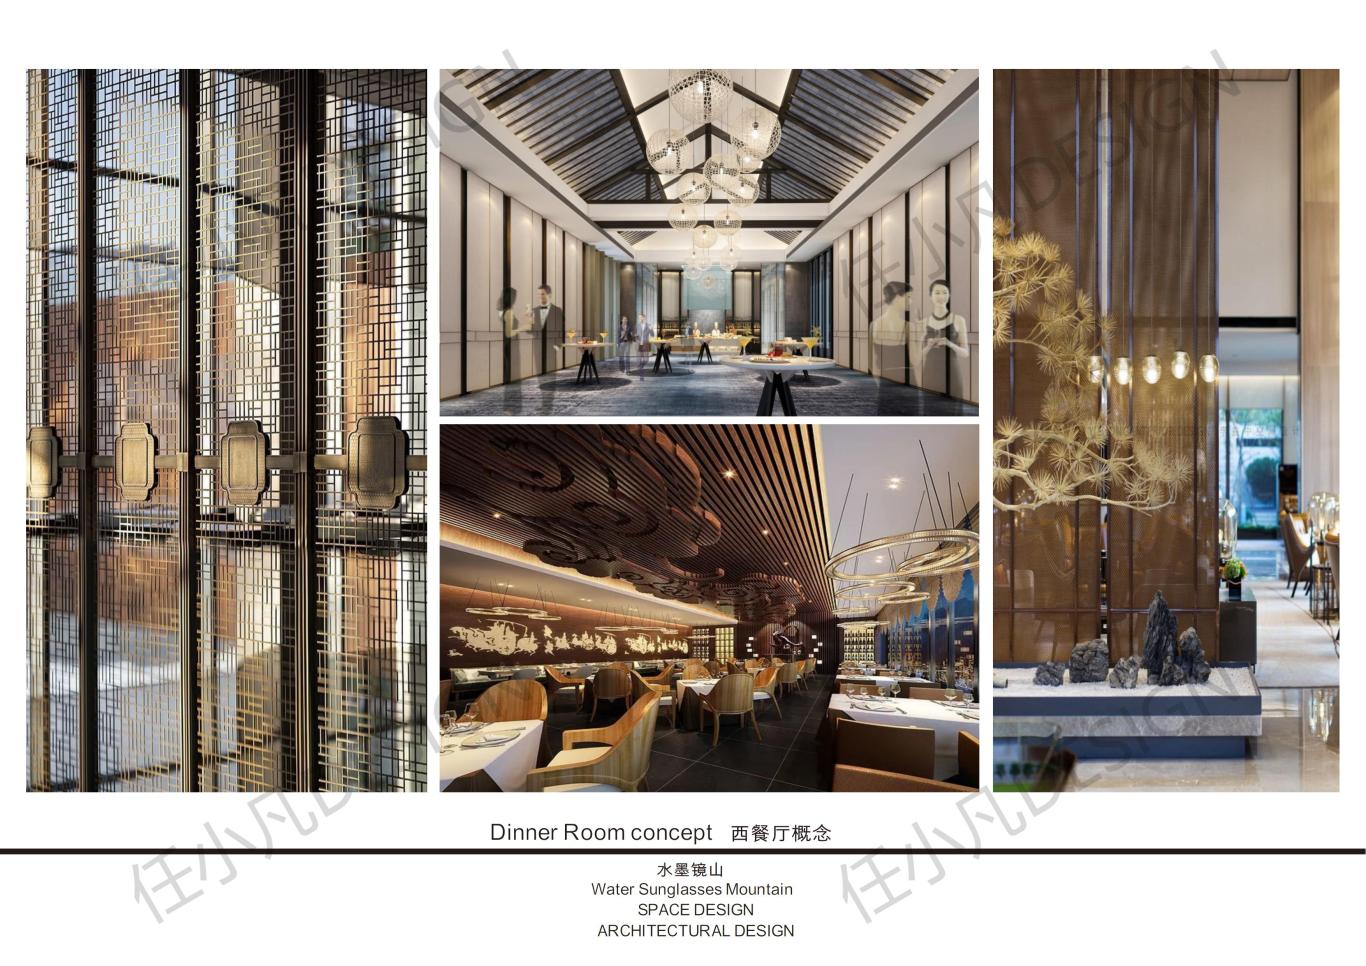 上高县水墨镜山酒店概念方案设计图32